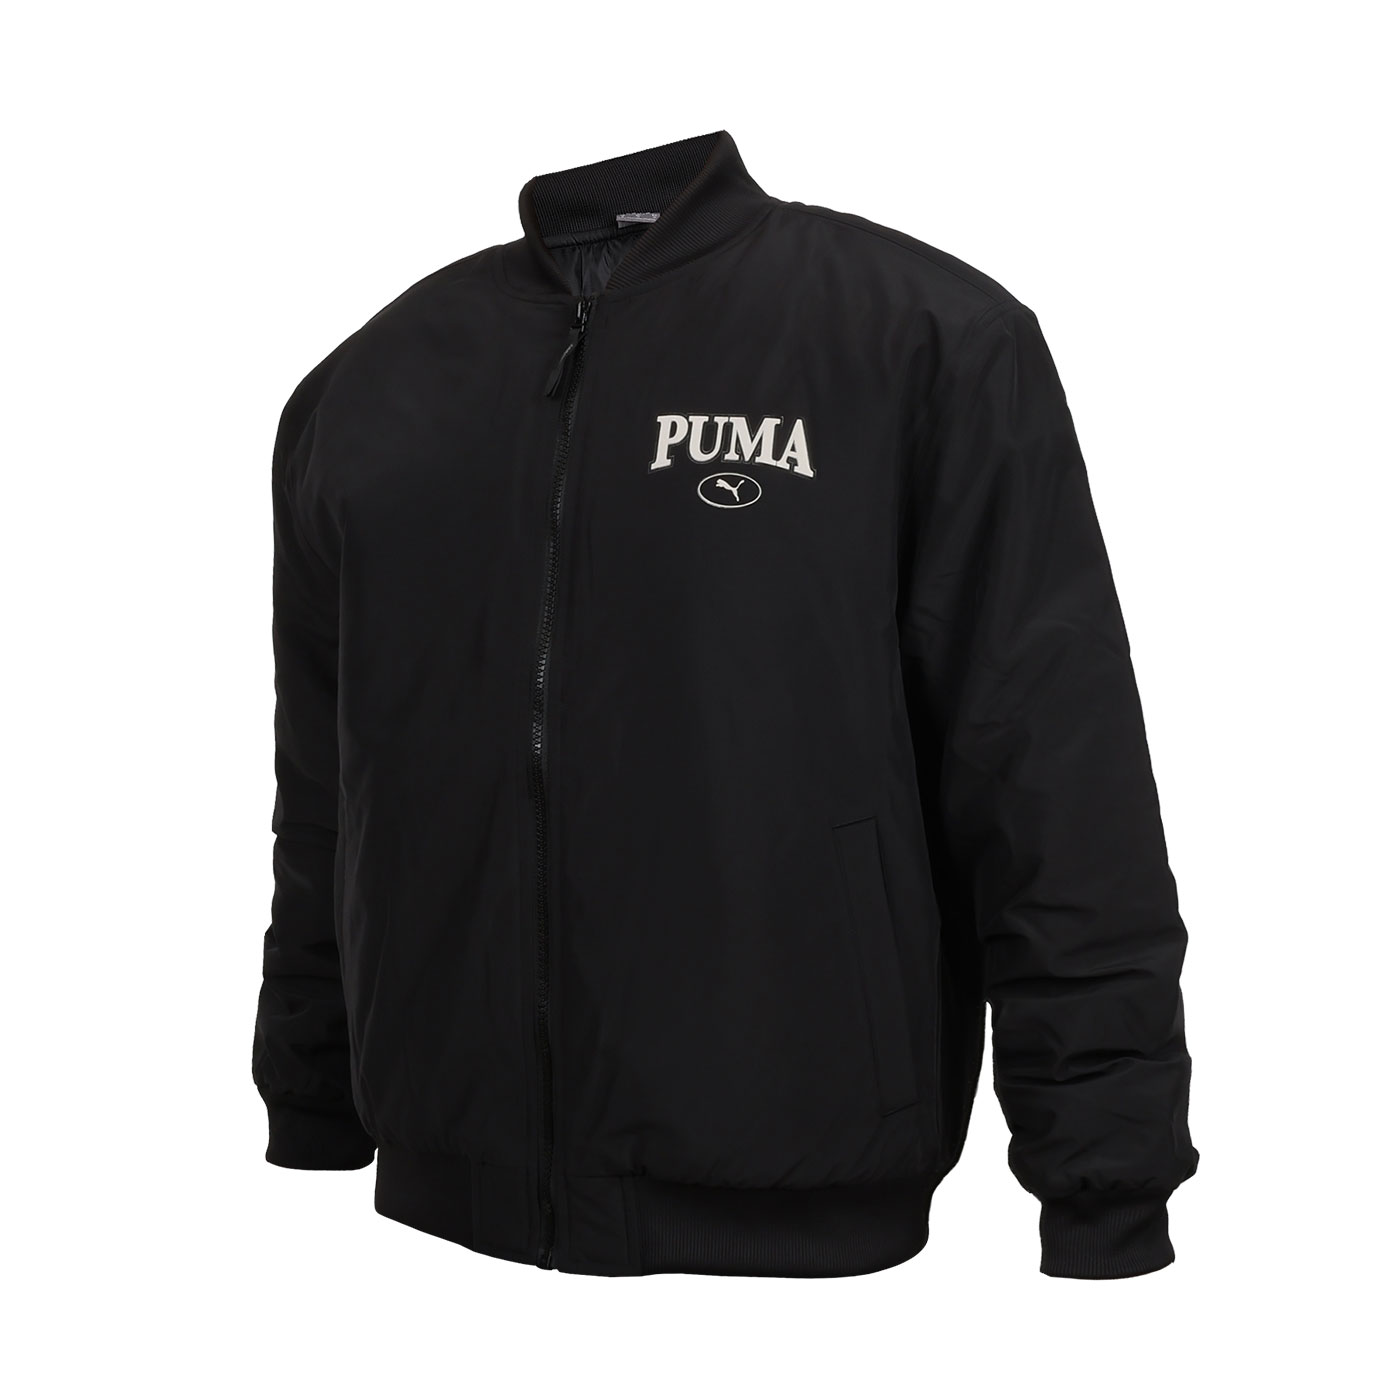 PUMA 男款基本系列Puma Squad棒球外套  68000801